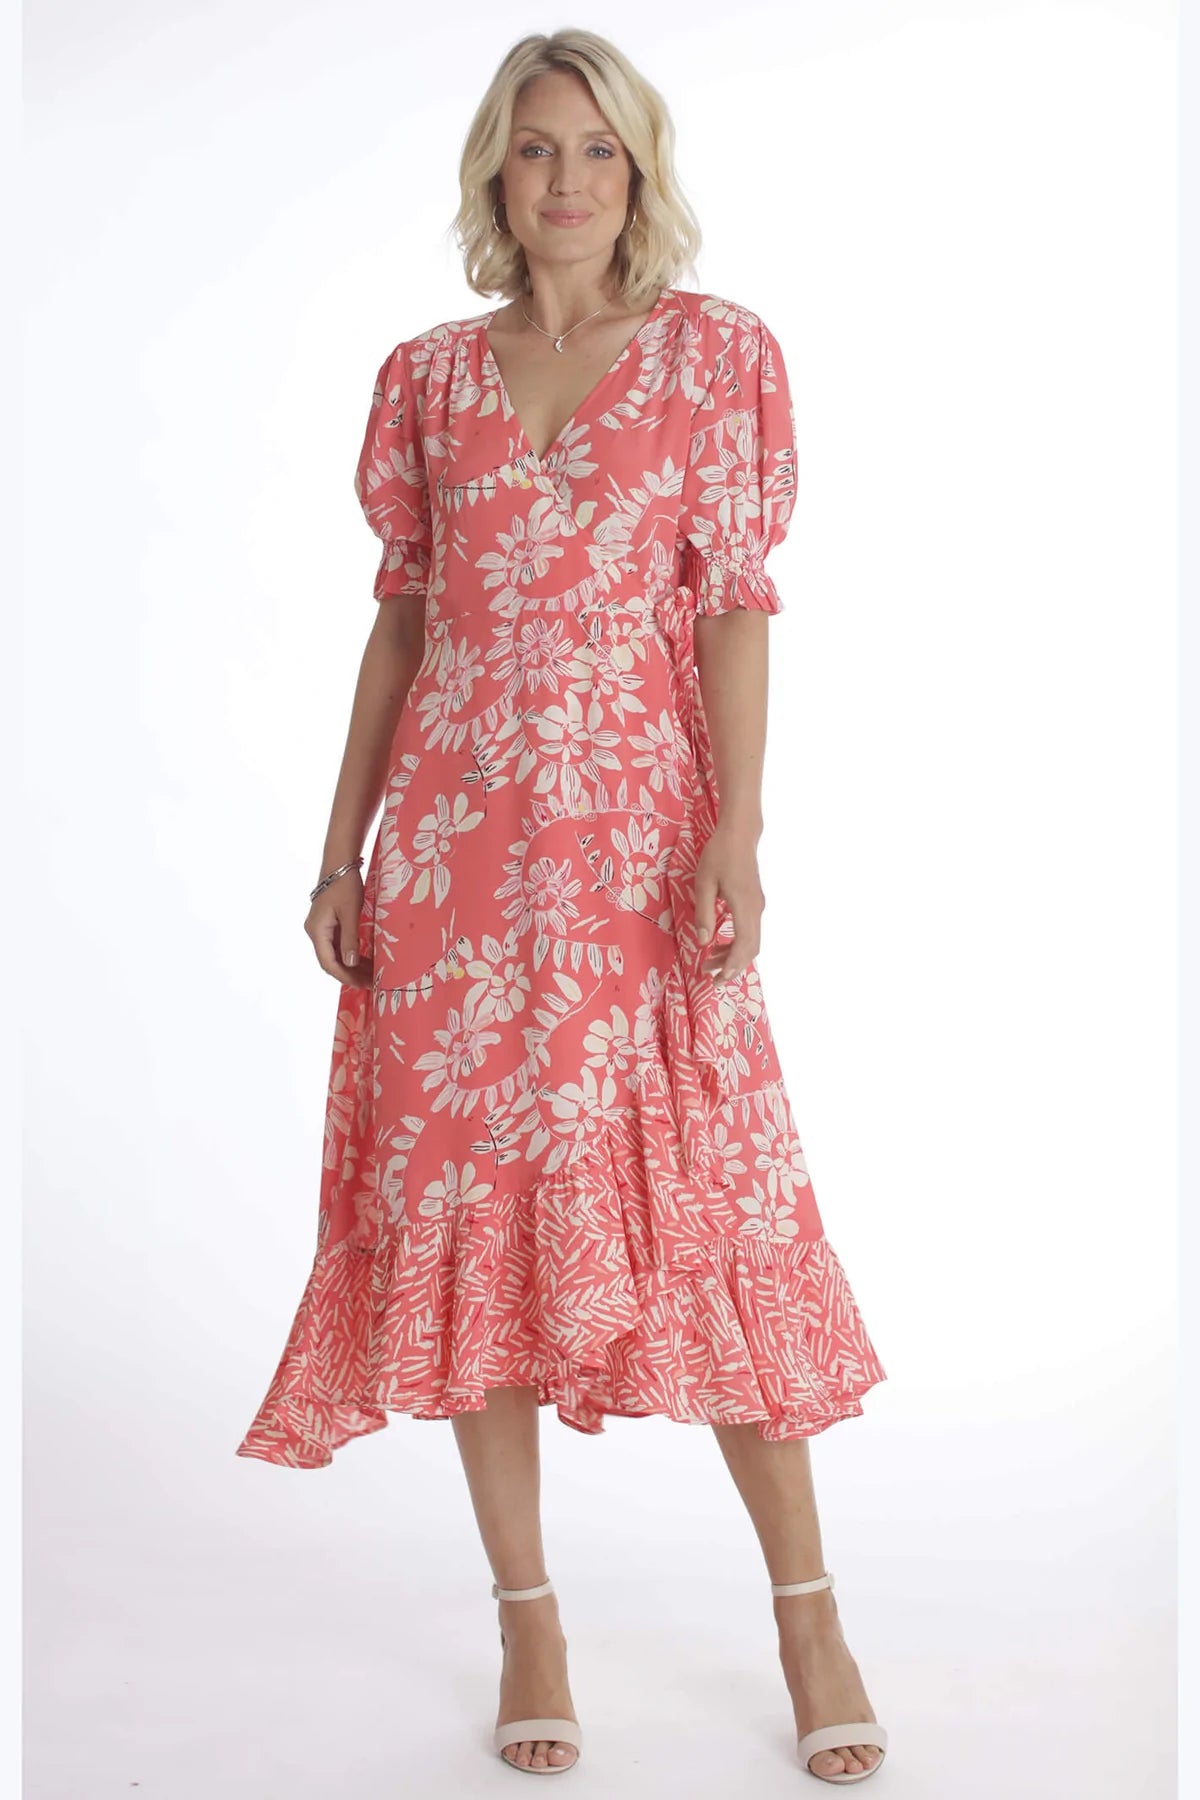 Pomodoro - Wrap Dress - 52206 - Coral - 1 x size 16 left